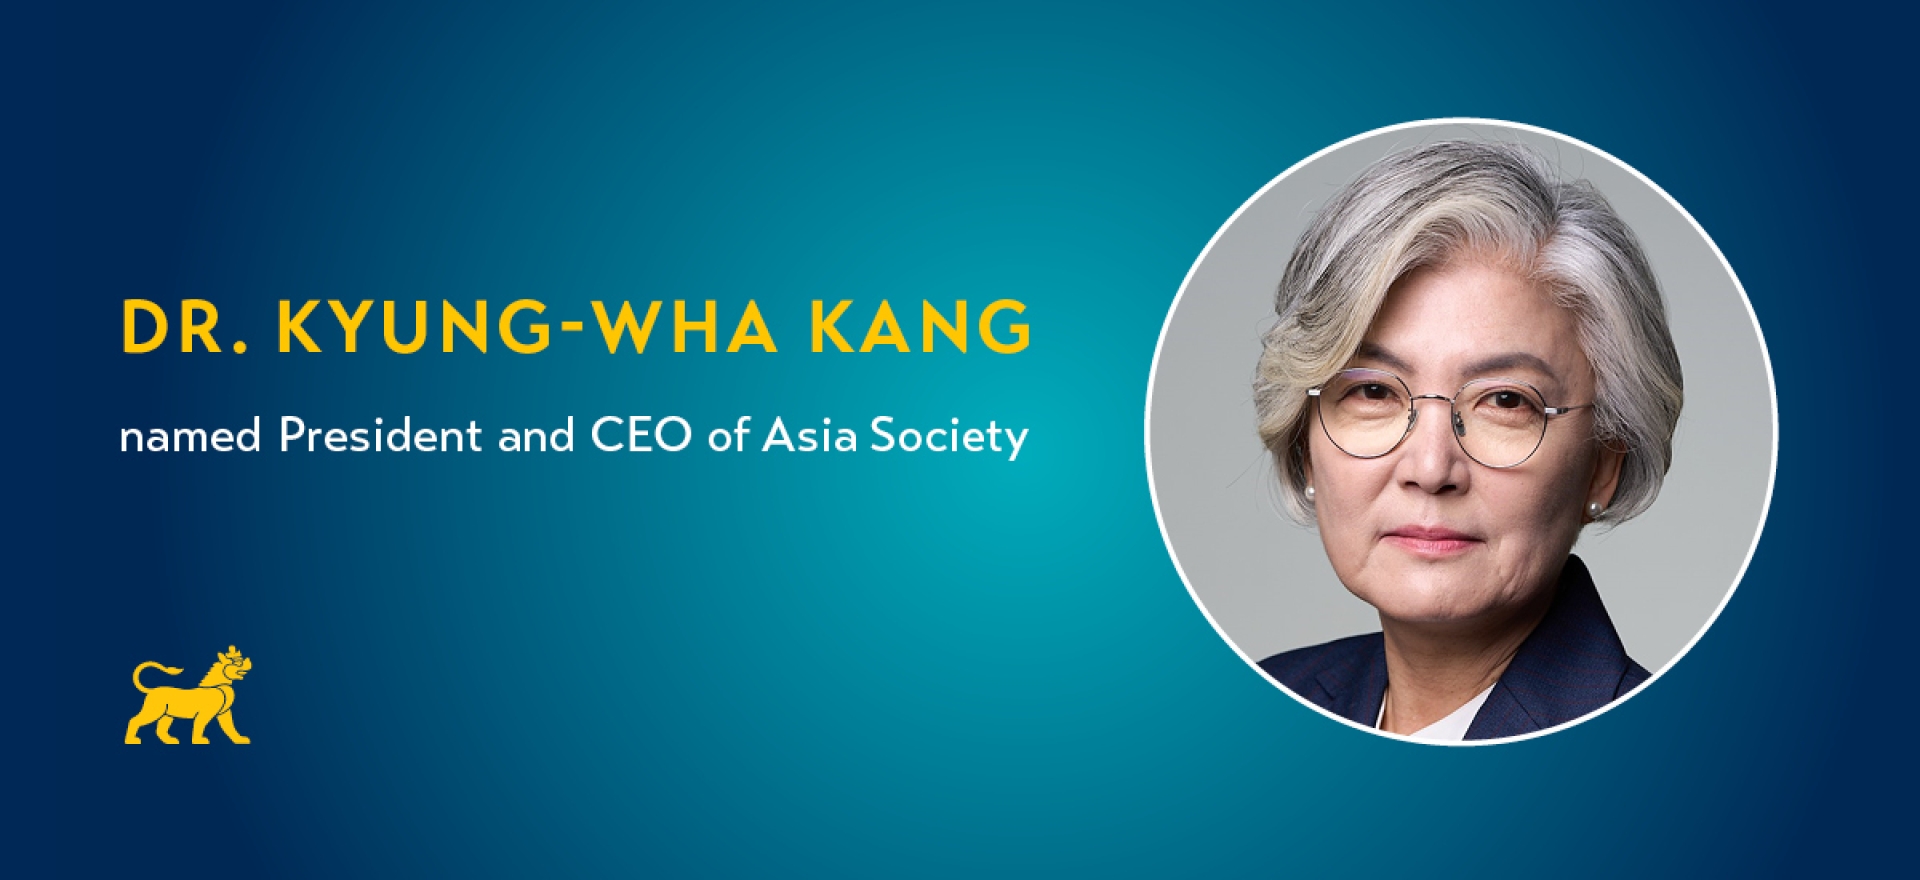 Kyung Wha Kang Names President of Asia Society